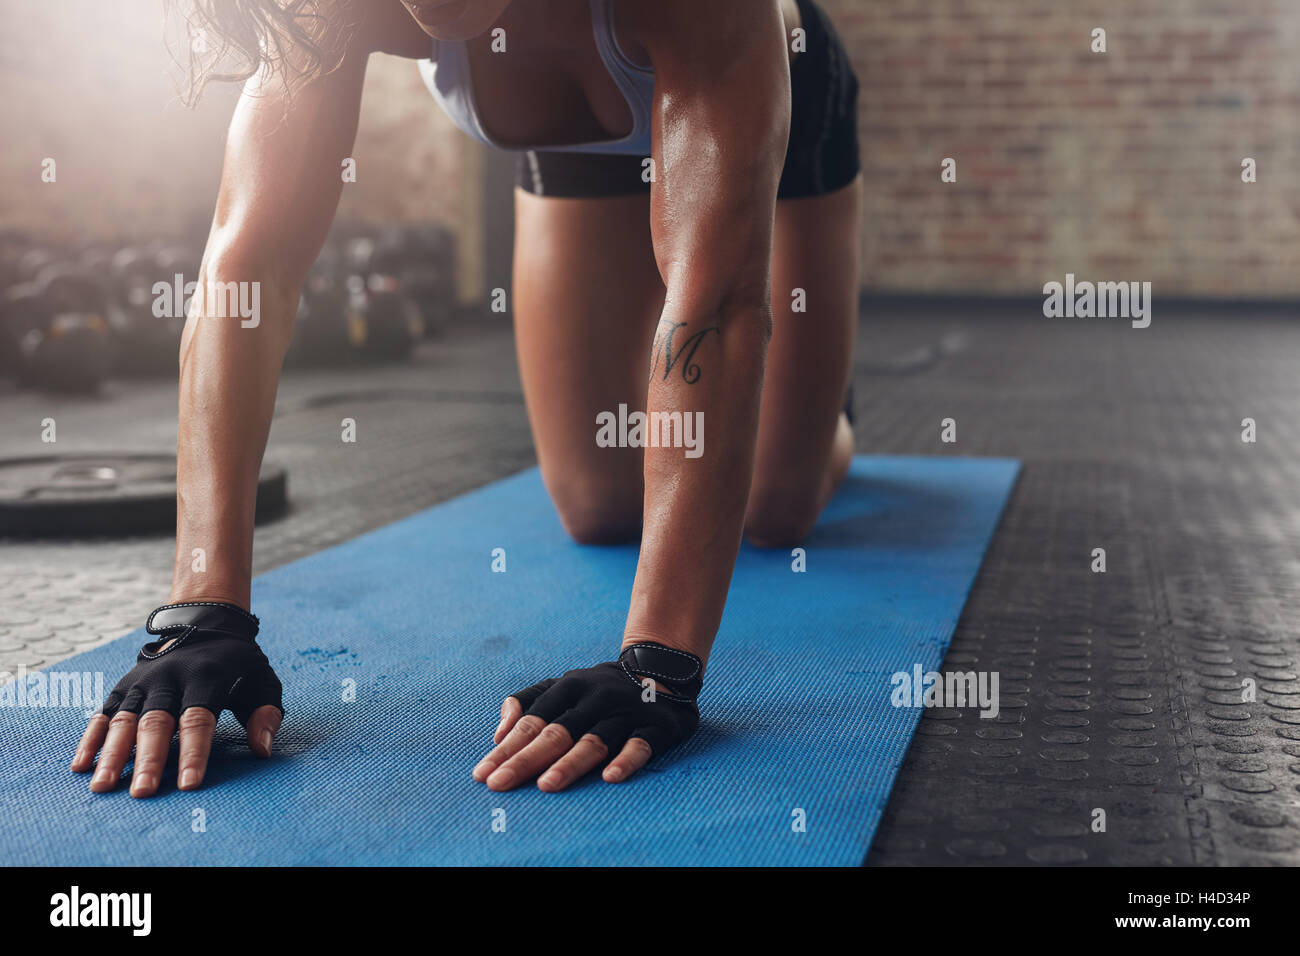 Sur les tapis d'exercice doing stretching entraînement. Se concentrer sur les mains d'une femme sur le tapis de fitness. Banque D'Images